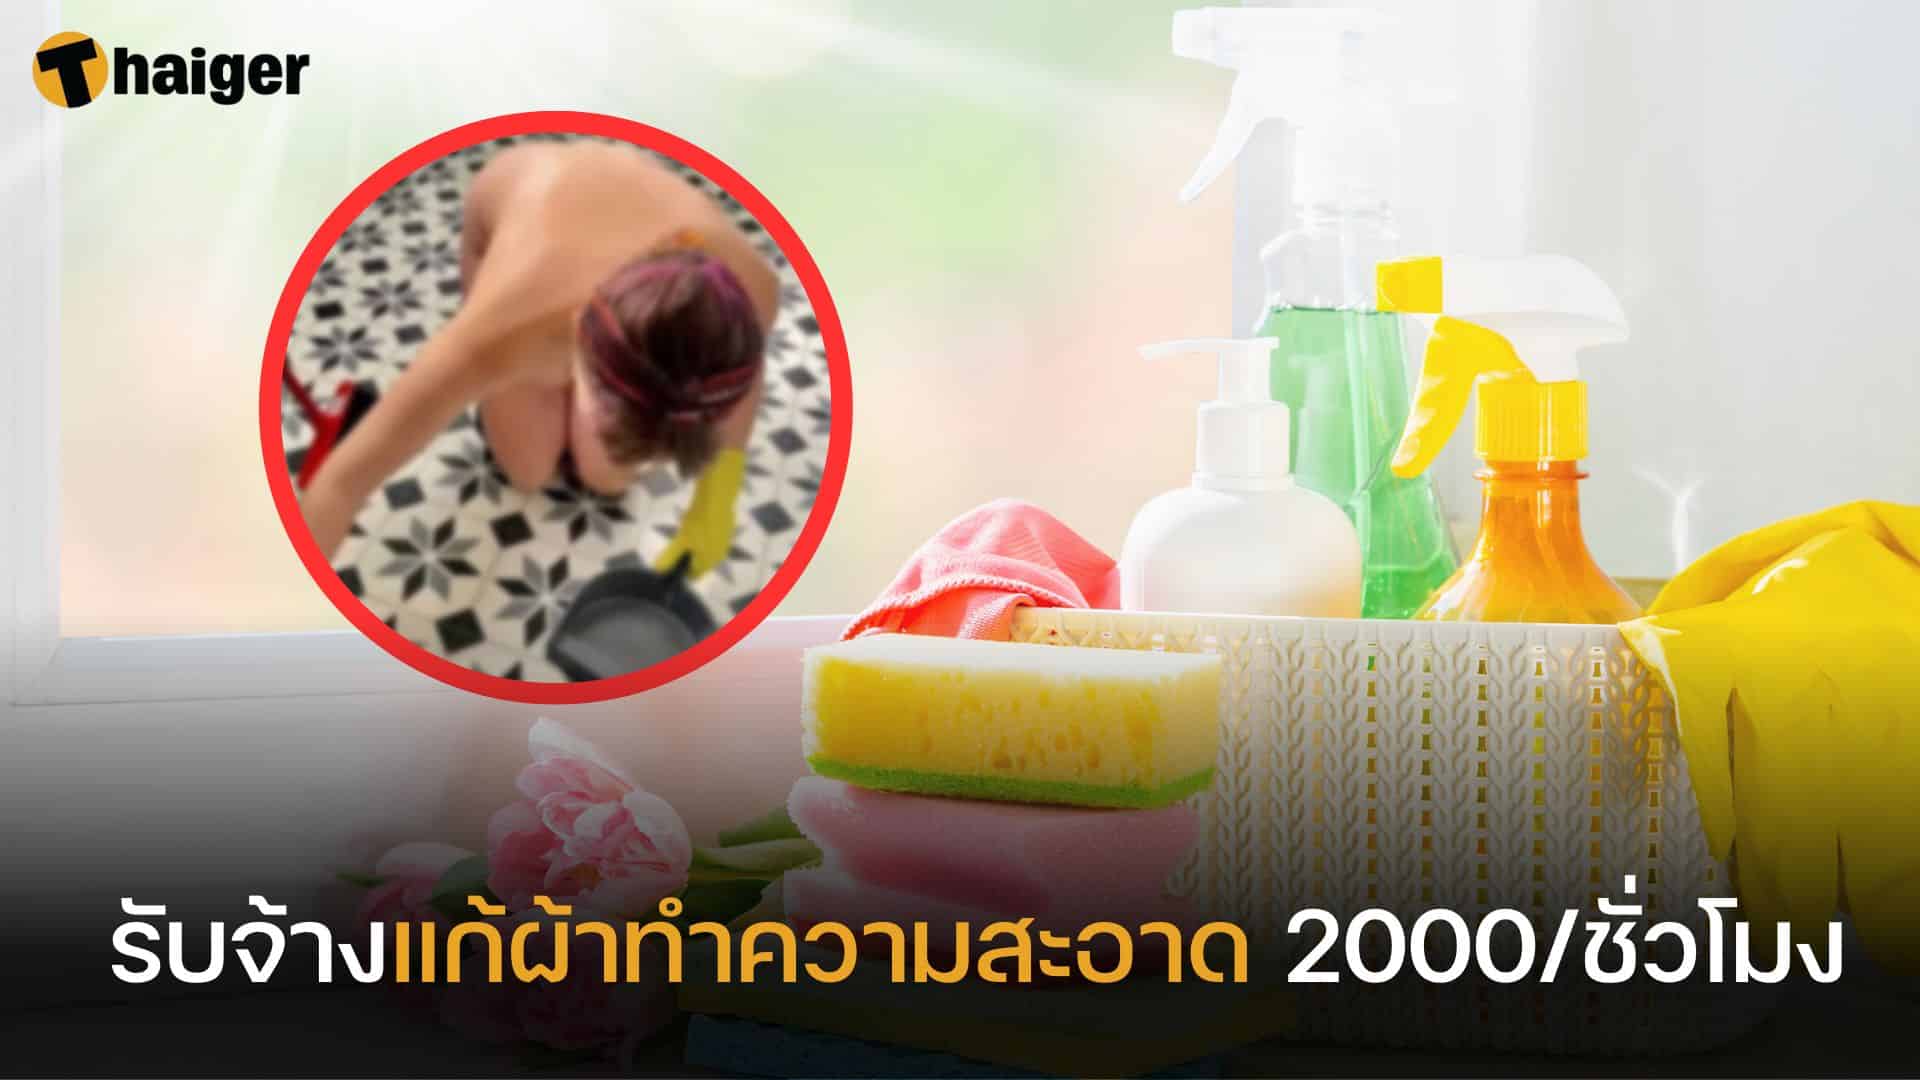 เปิดอาชีพ 'รับจ้างแก้ผ้าทำงานบ้าน' ฟันรายได้หลักแสนต่อปี | Thaiger ข่าวไทย